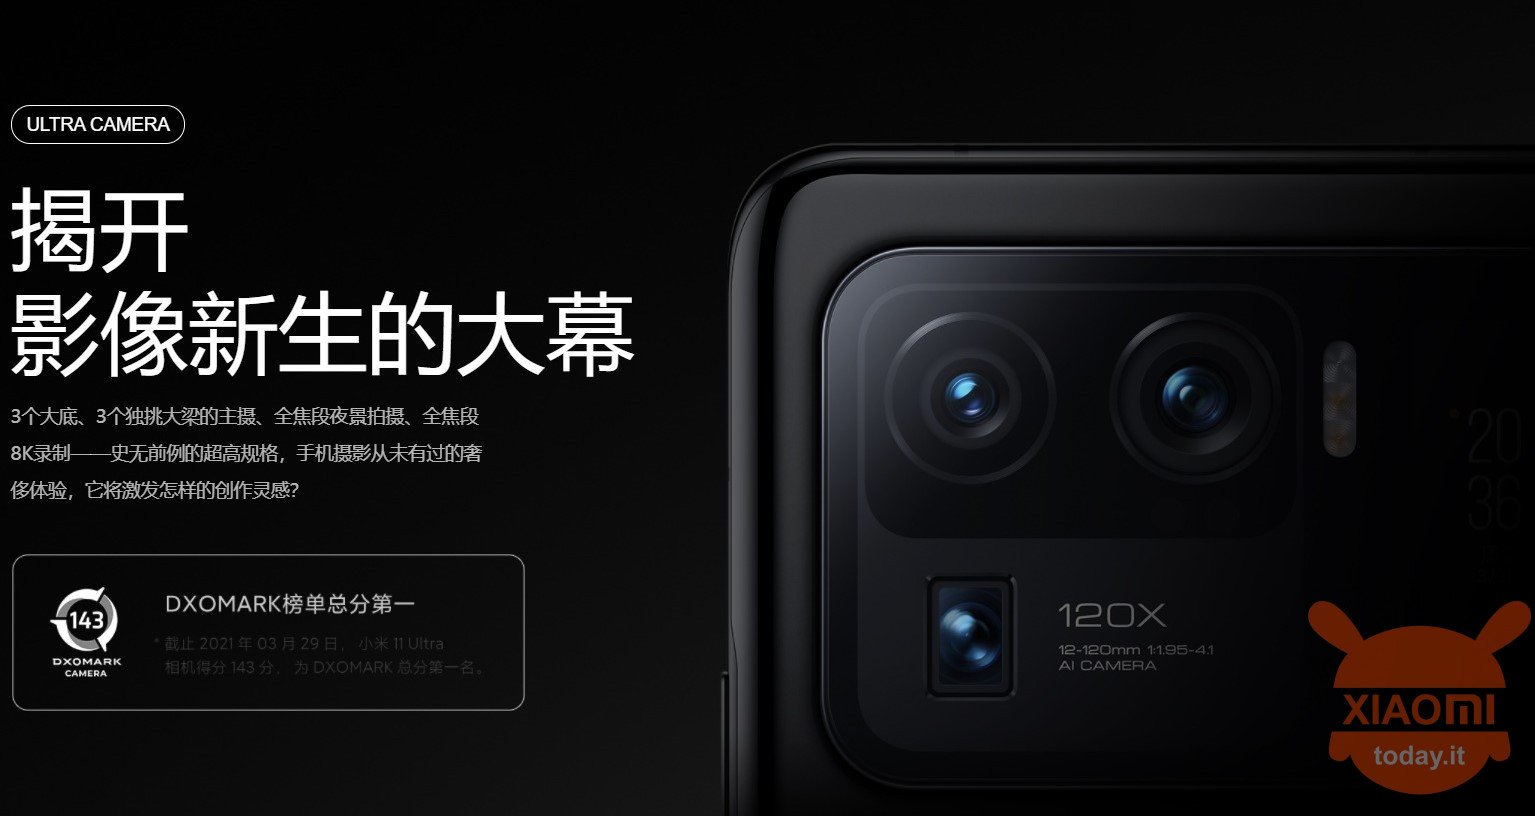 Xiaomi Mi 11 Ultra dxomark